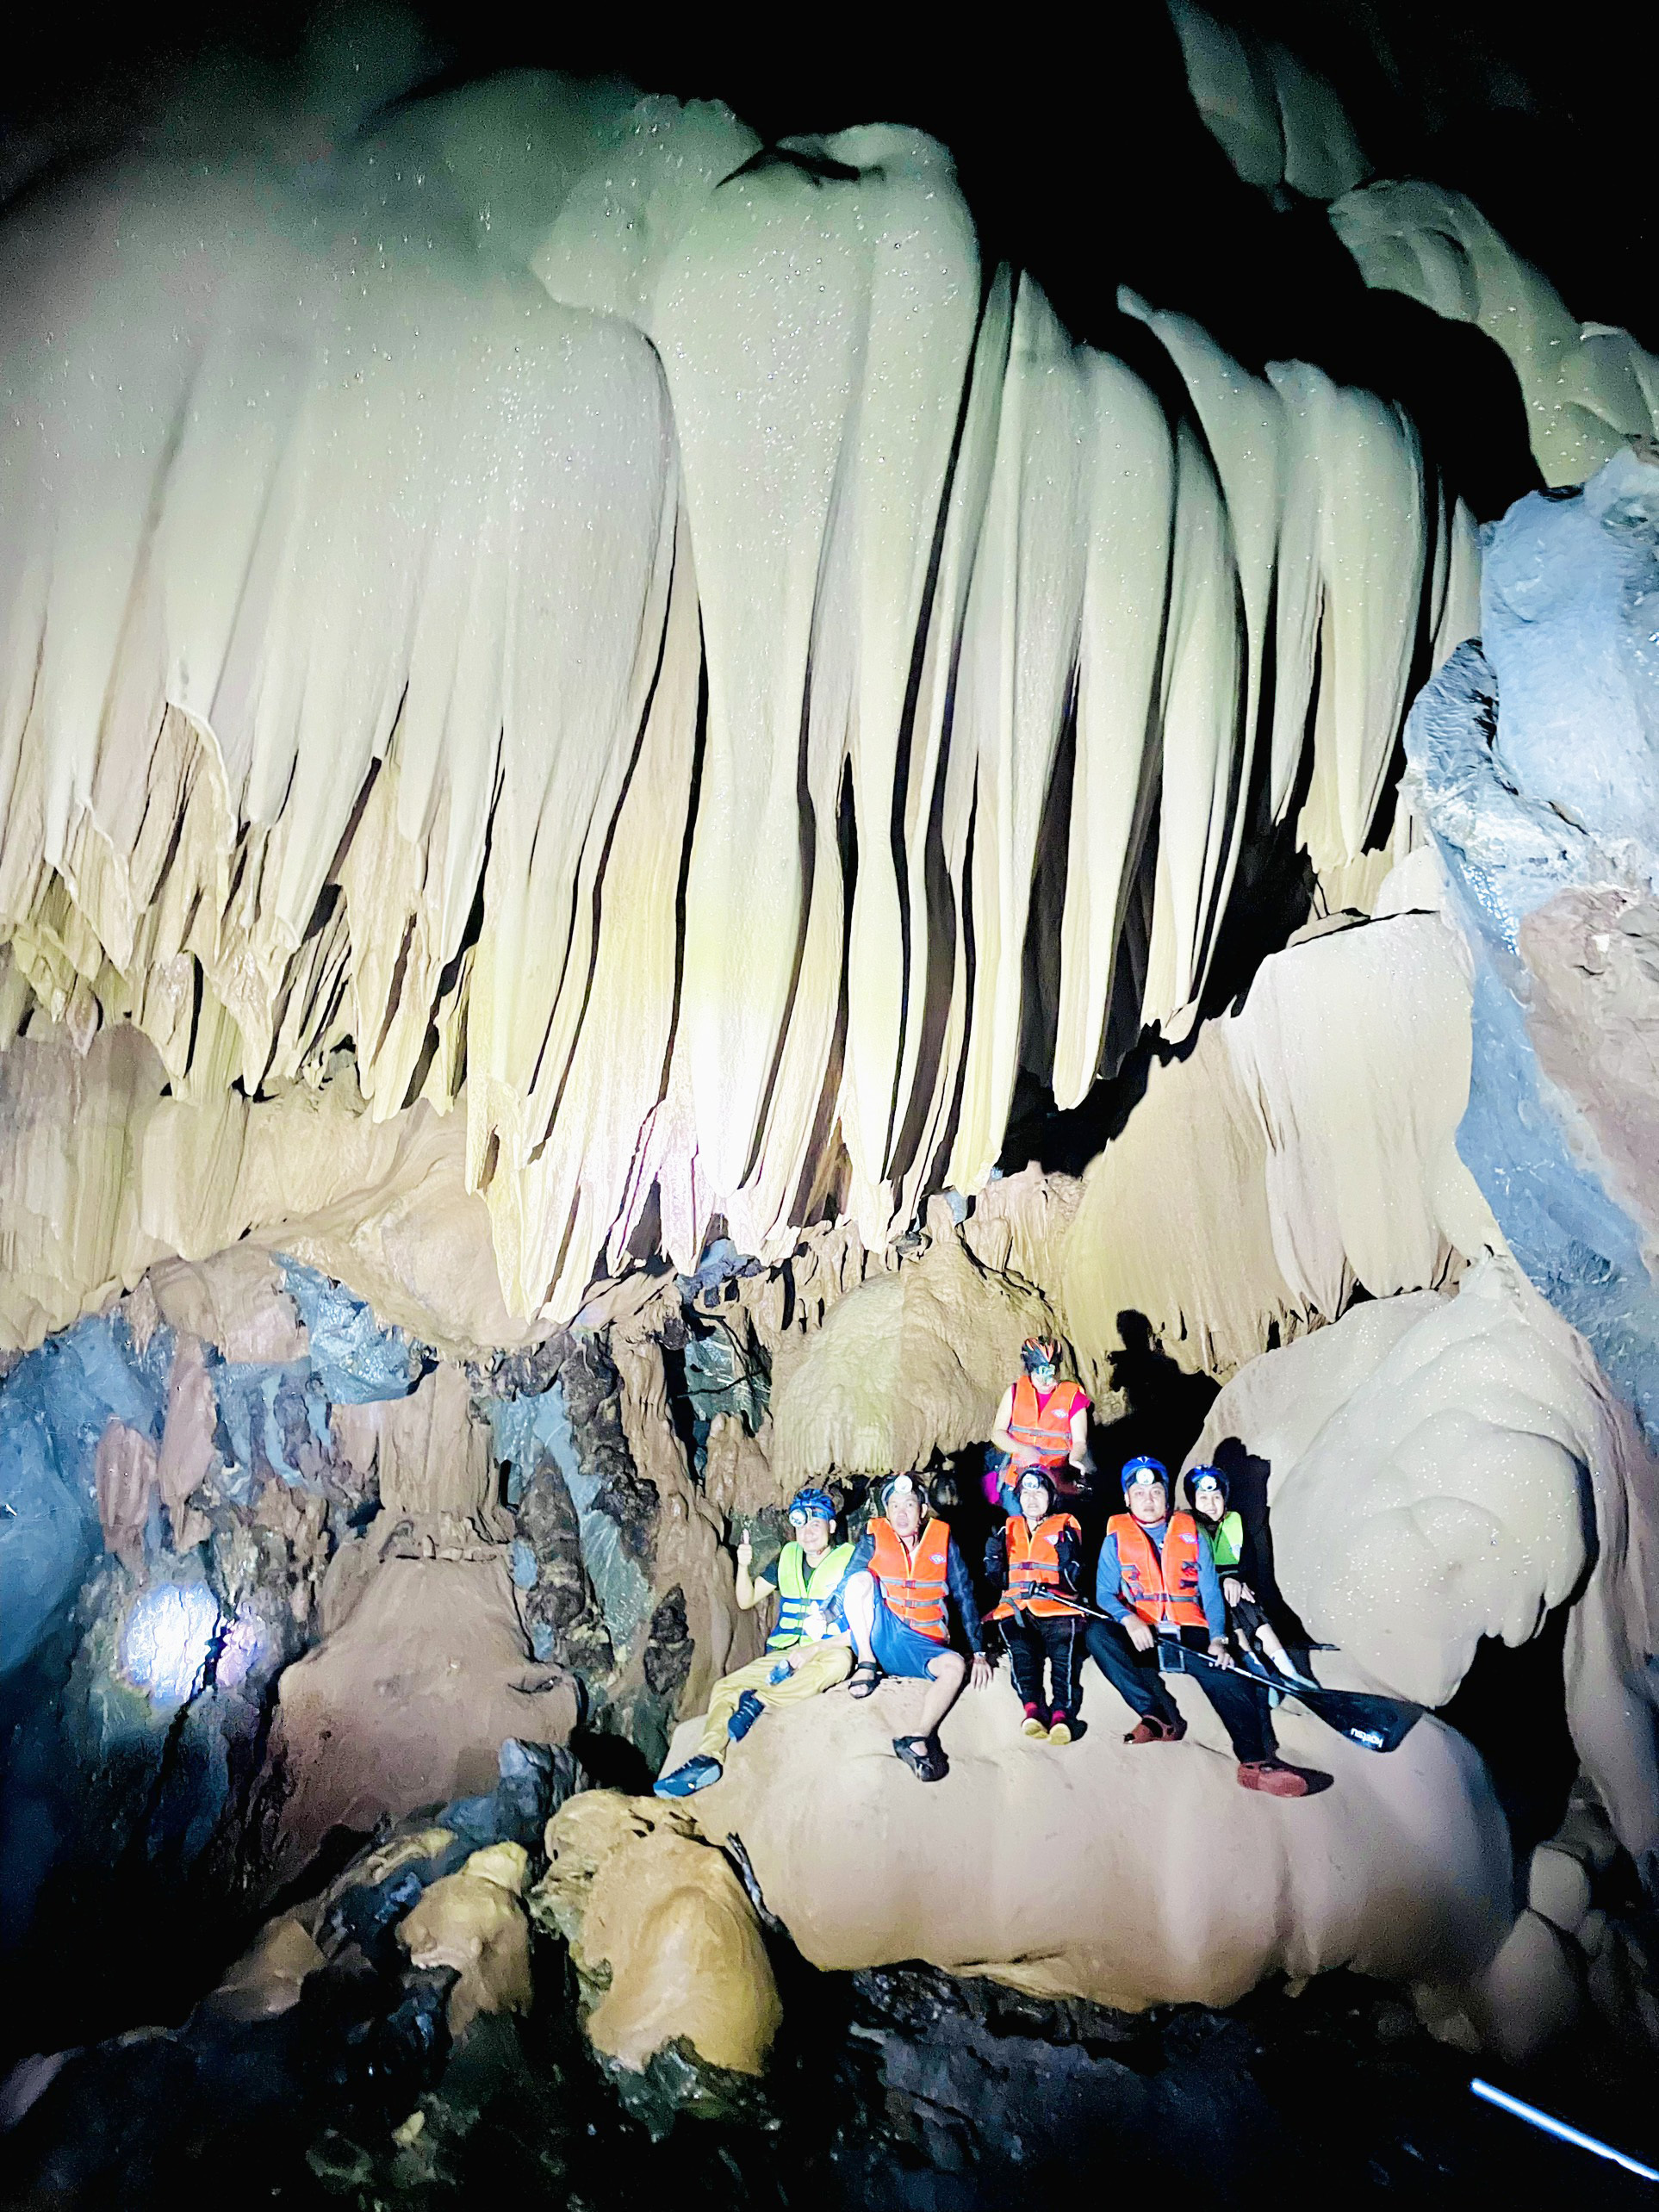 Ngạc nhiên khi đoàn khảo sát chà đạp trên thạch nhũ trong hang động ở Quảng Bình - Ảnh 5.